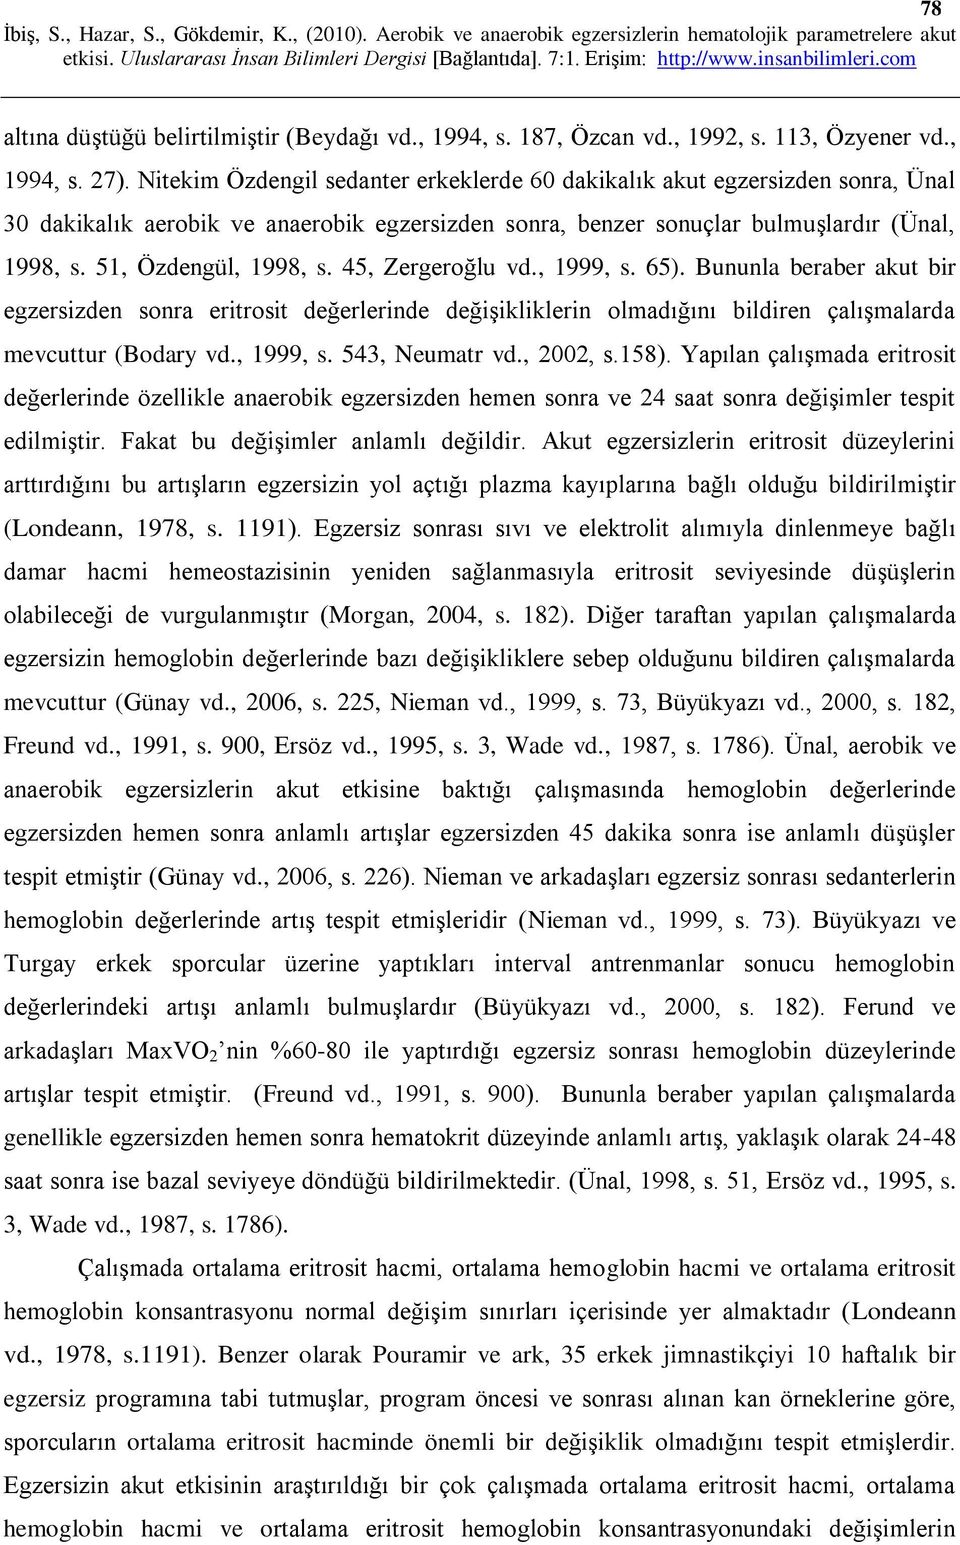 45, Zergeroğlu vd., 1999, s. 65). Bununla beraber akut bir egzersizden sonra eritrosit değerlerinde değişikliklerin olmadığını bildiren çalışmalarda mevcuttur (Bodary vd., 1999, s. 543, Neumatr vd.